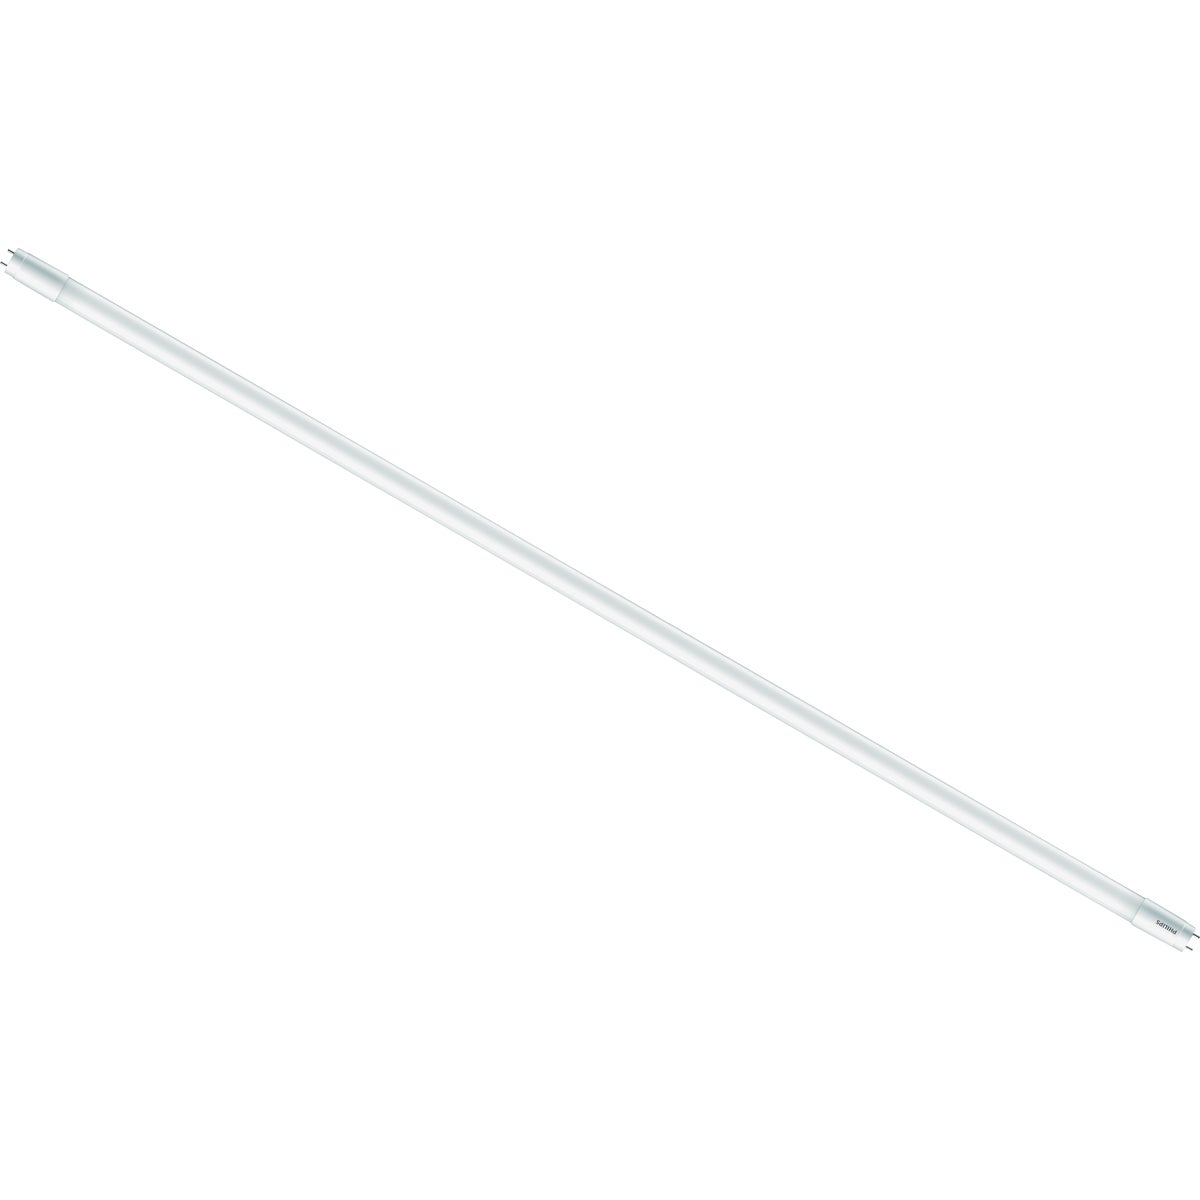 Item 502538, T8 LED (light emitting diode), single pin tube light bulb.